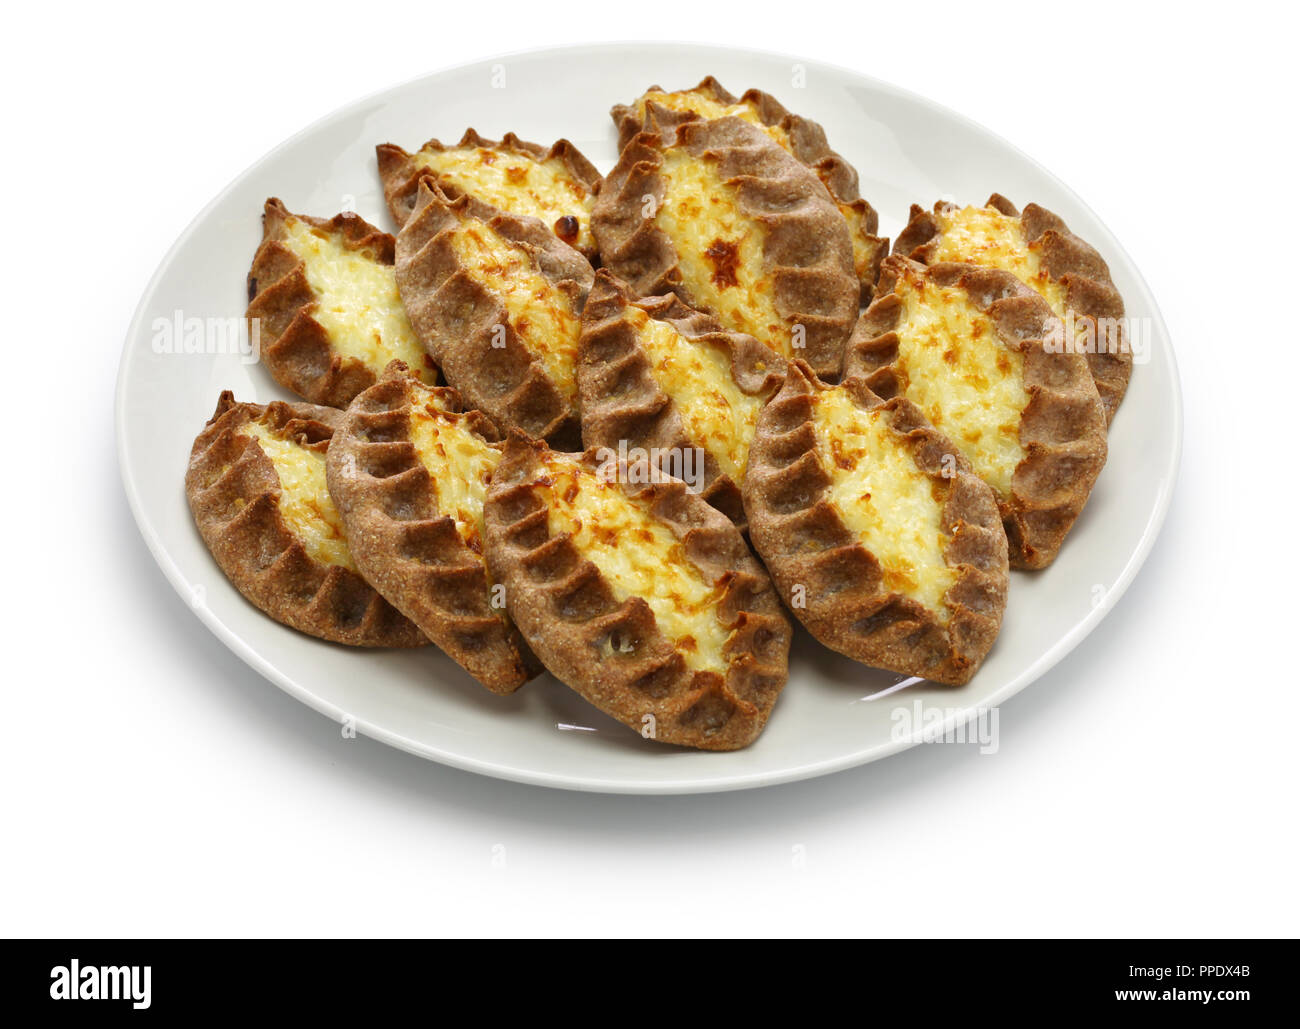 karjalanpiirakka, karelian pie, finnish food, finland breakfast Stock Photo